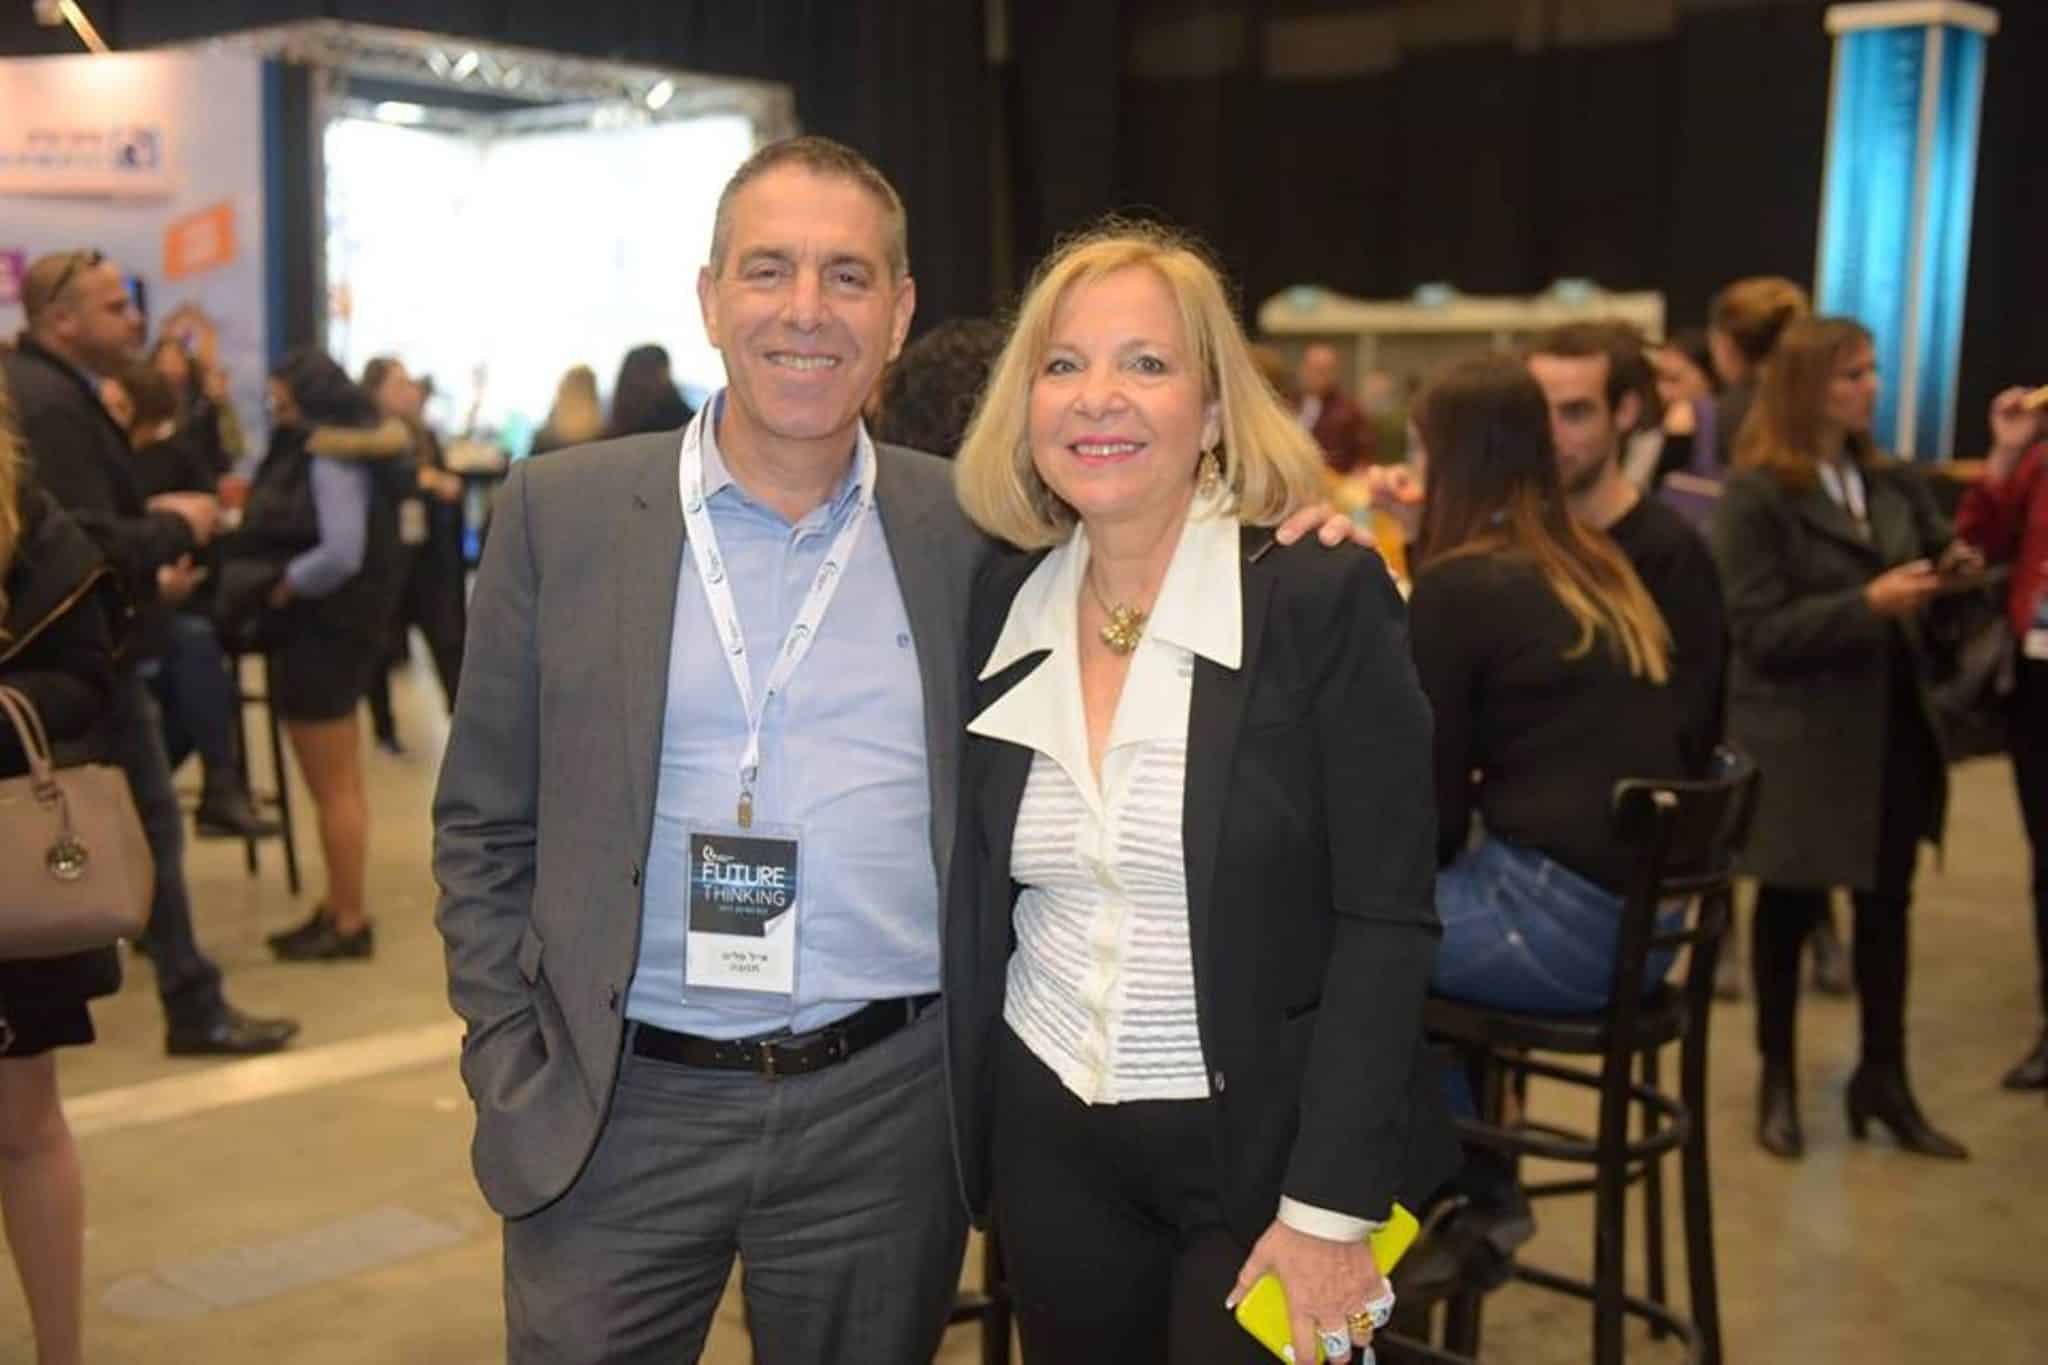 אייל מליס עם תלמה בירו, מנכ"לית איגוד השיווק הישראלי